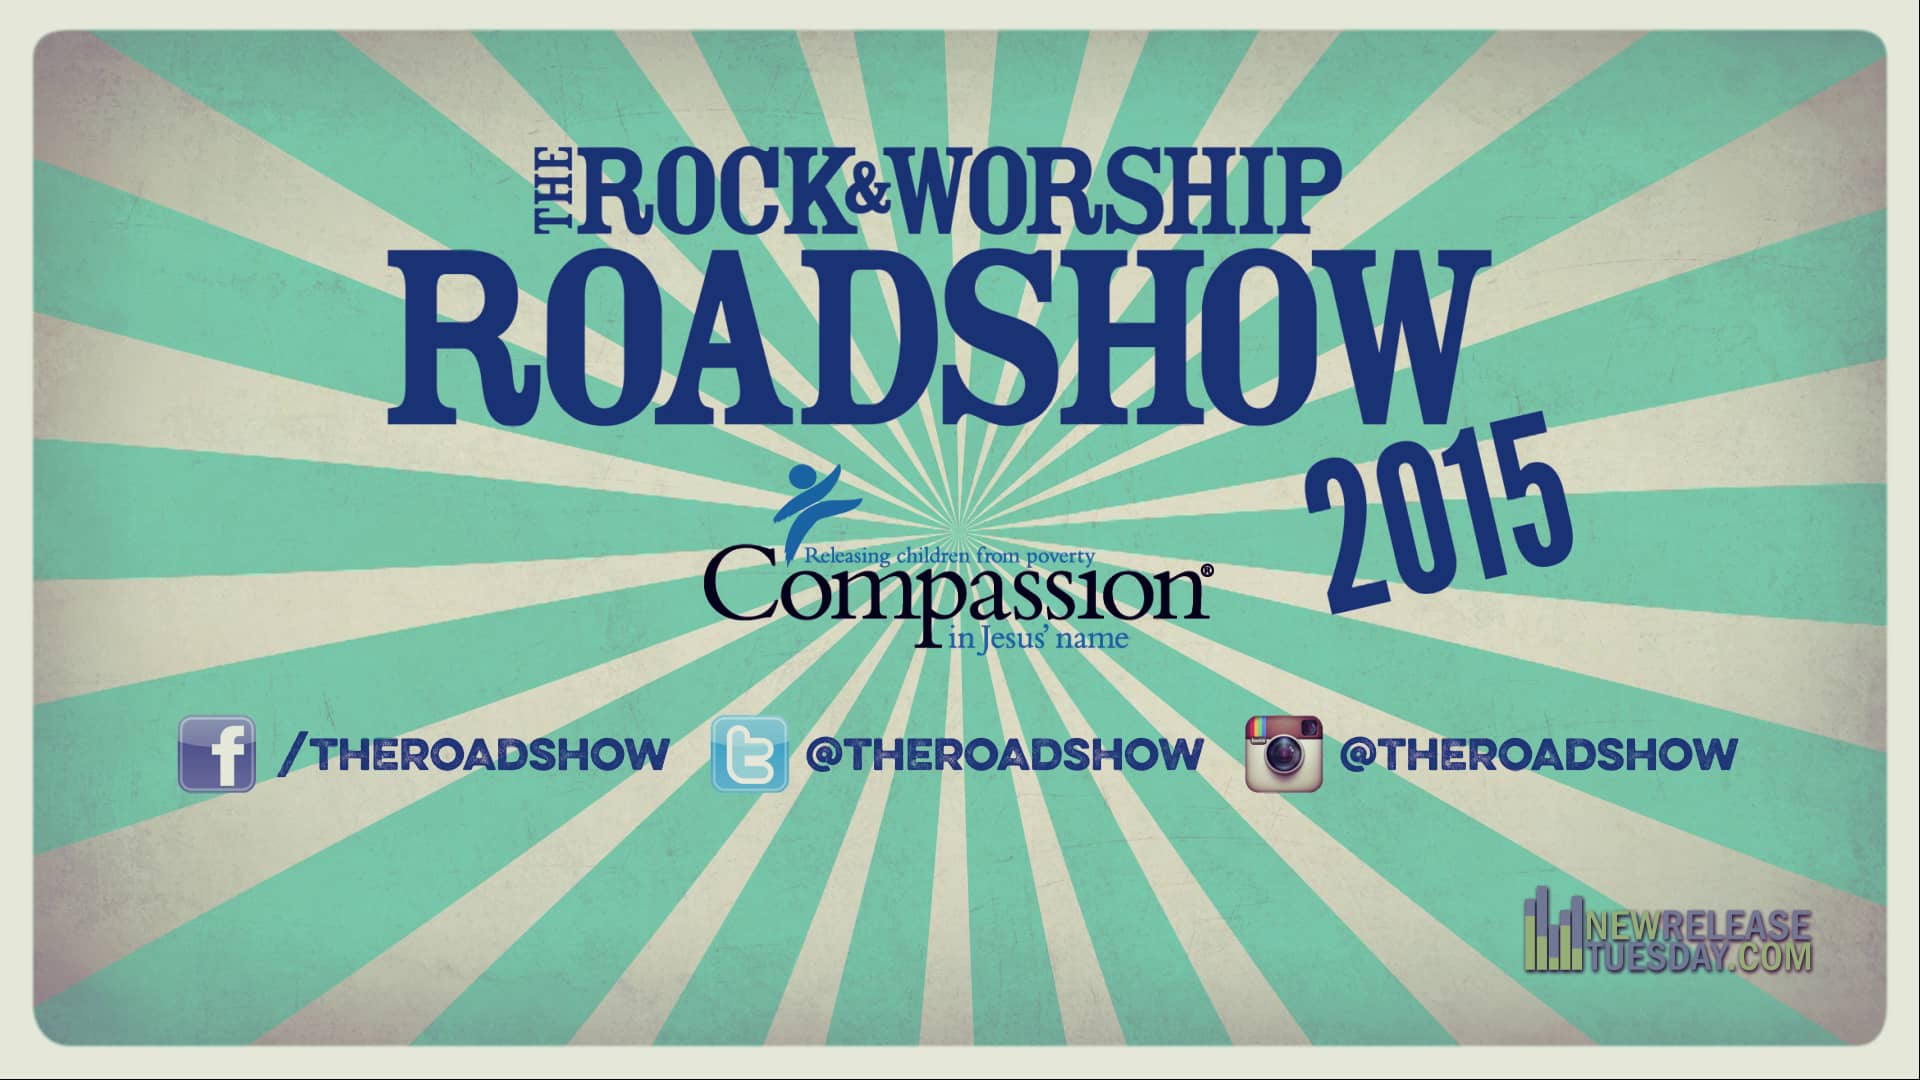 The Rock & Worship Roadshow Tour 2015 on Vimeo